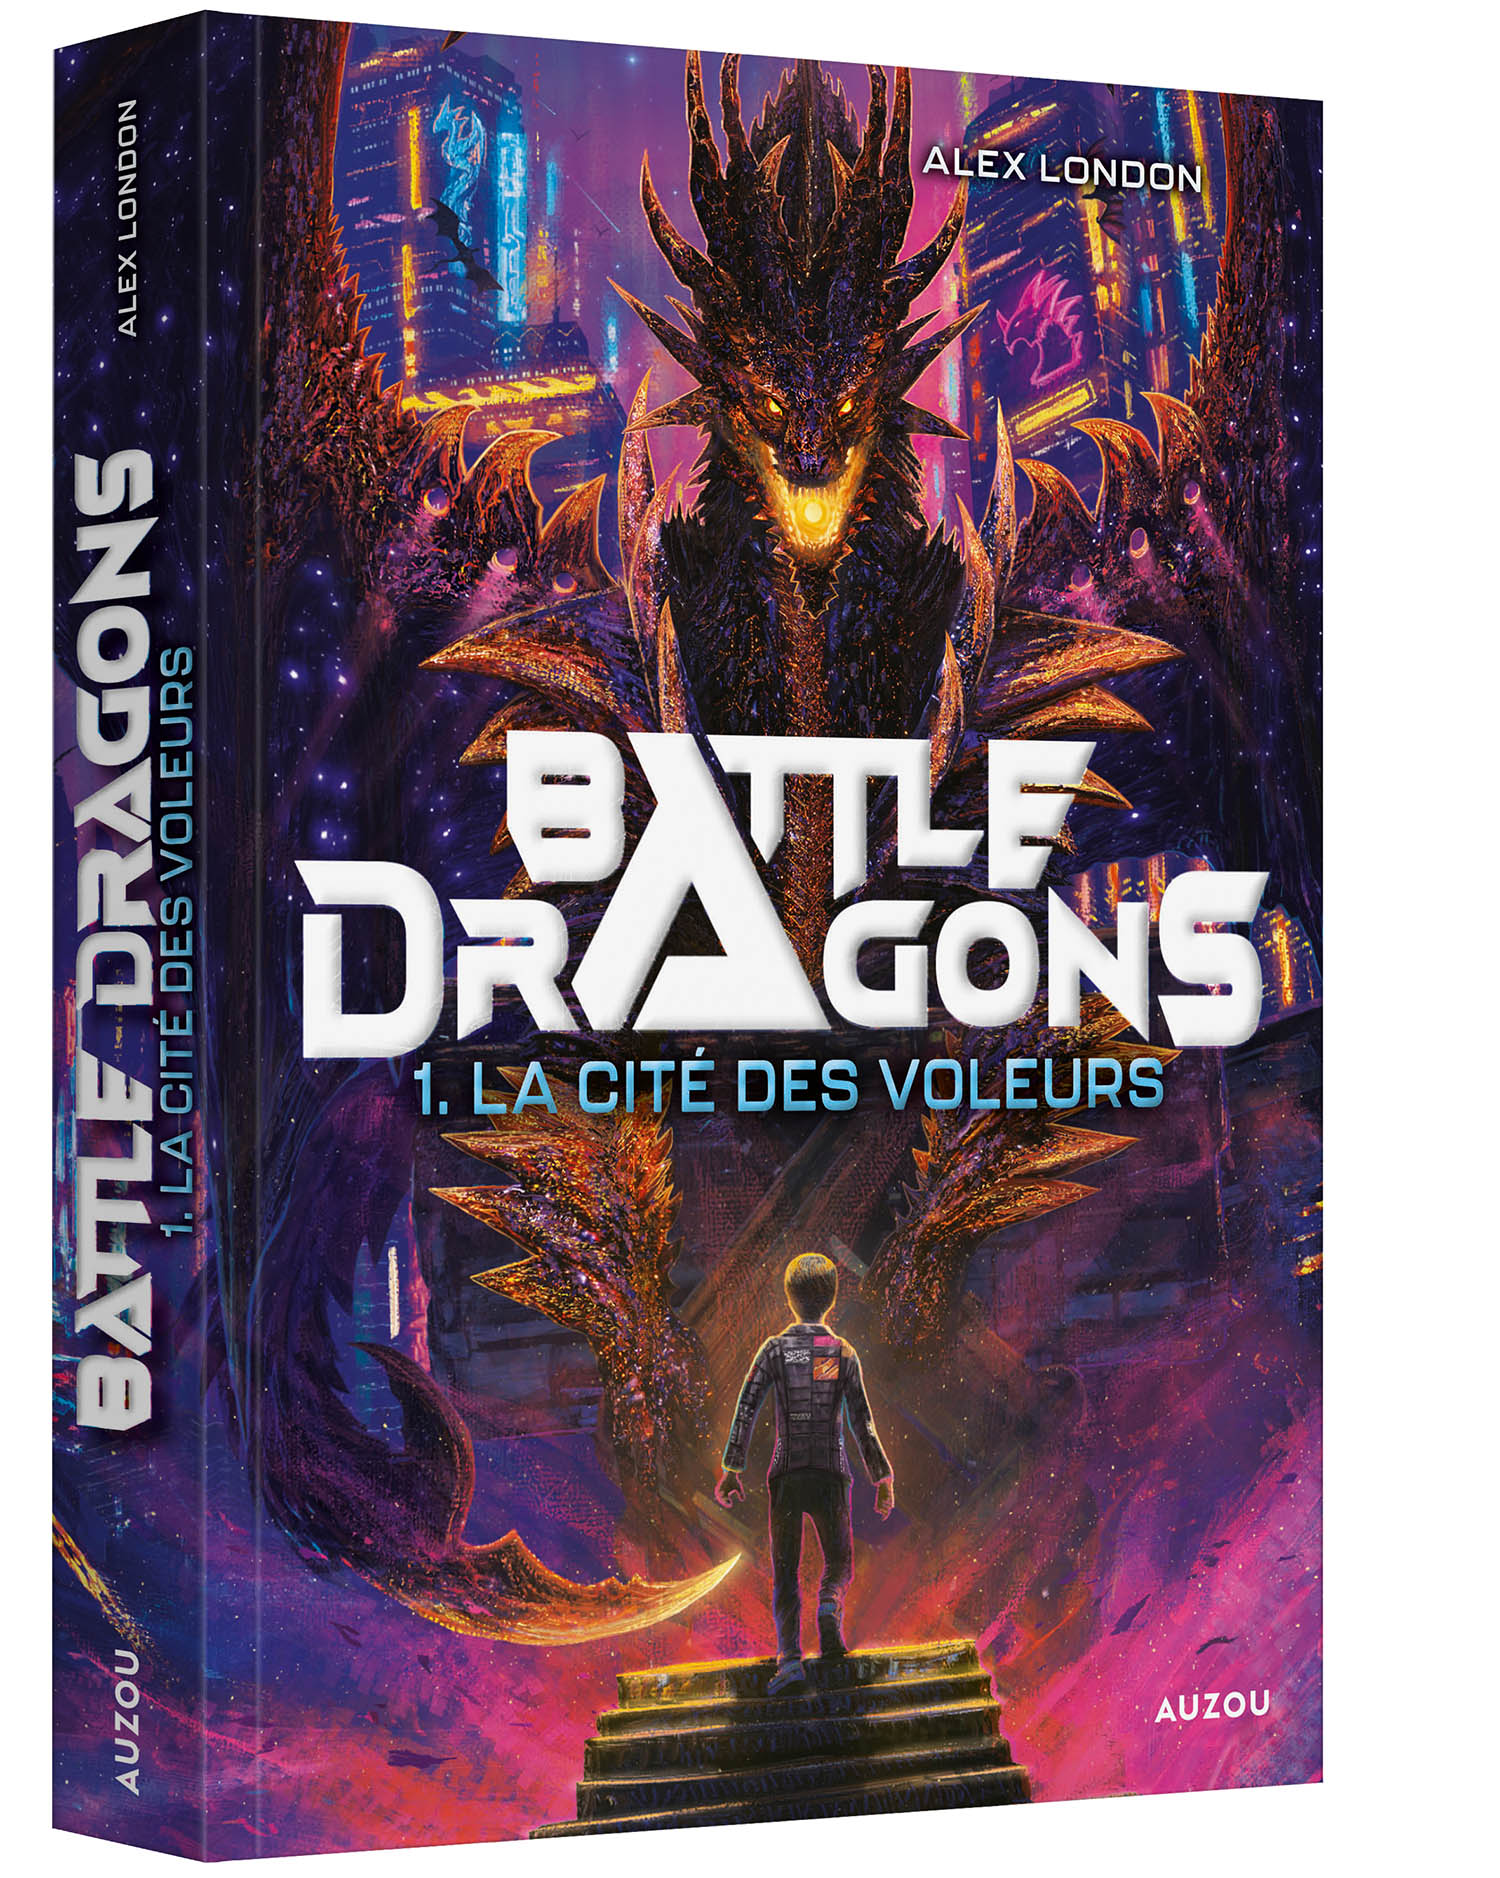 Battle Dragons T1 (La Cite Des Voleurs)